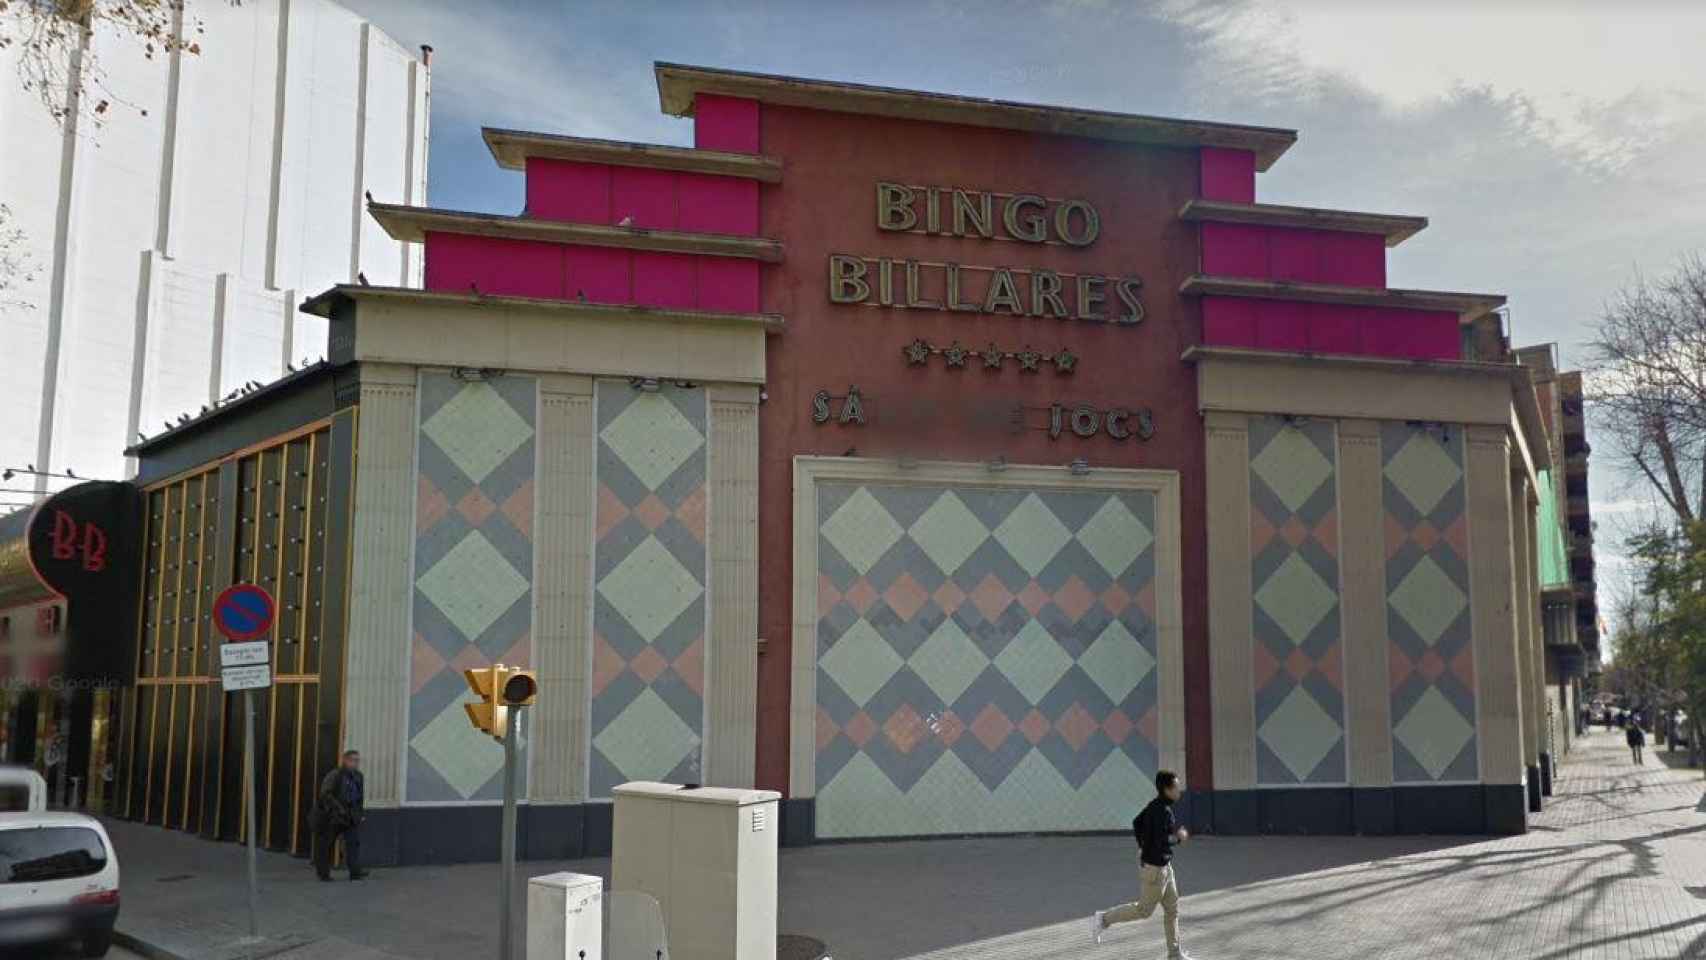 Bingo Billares